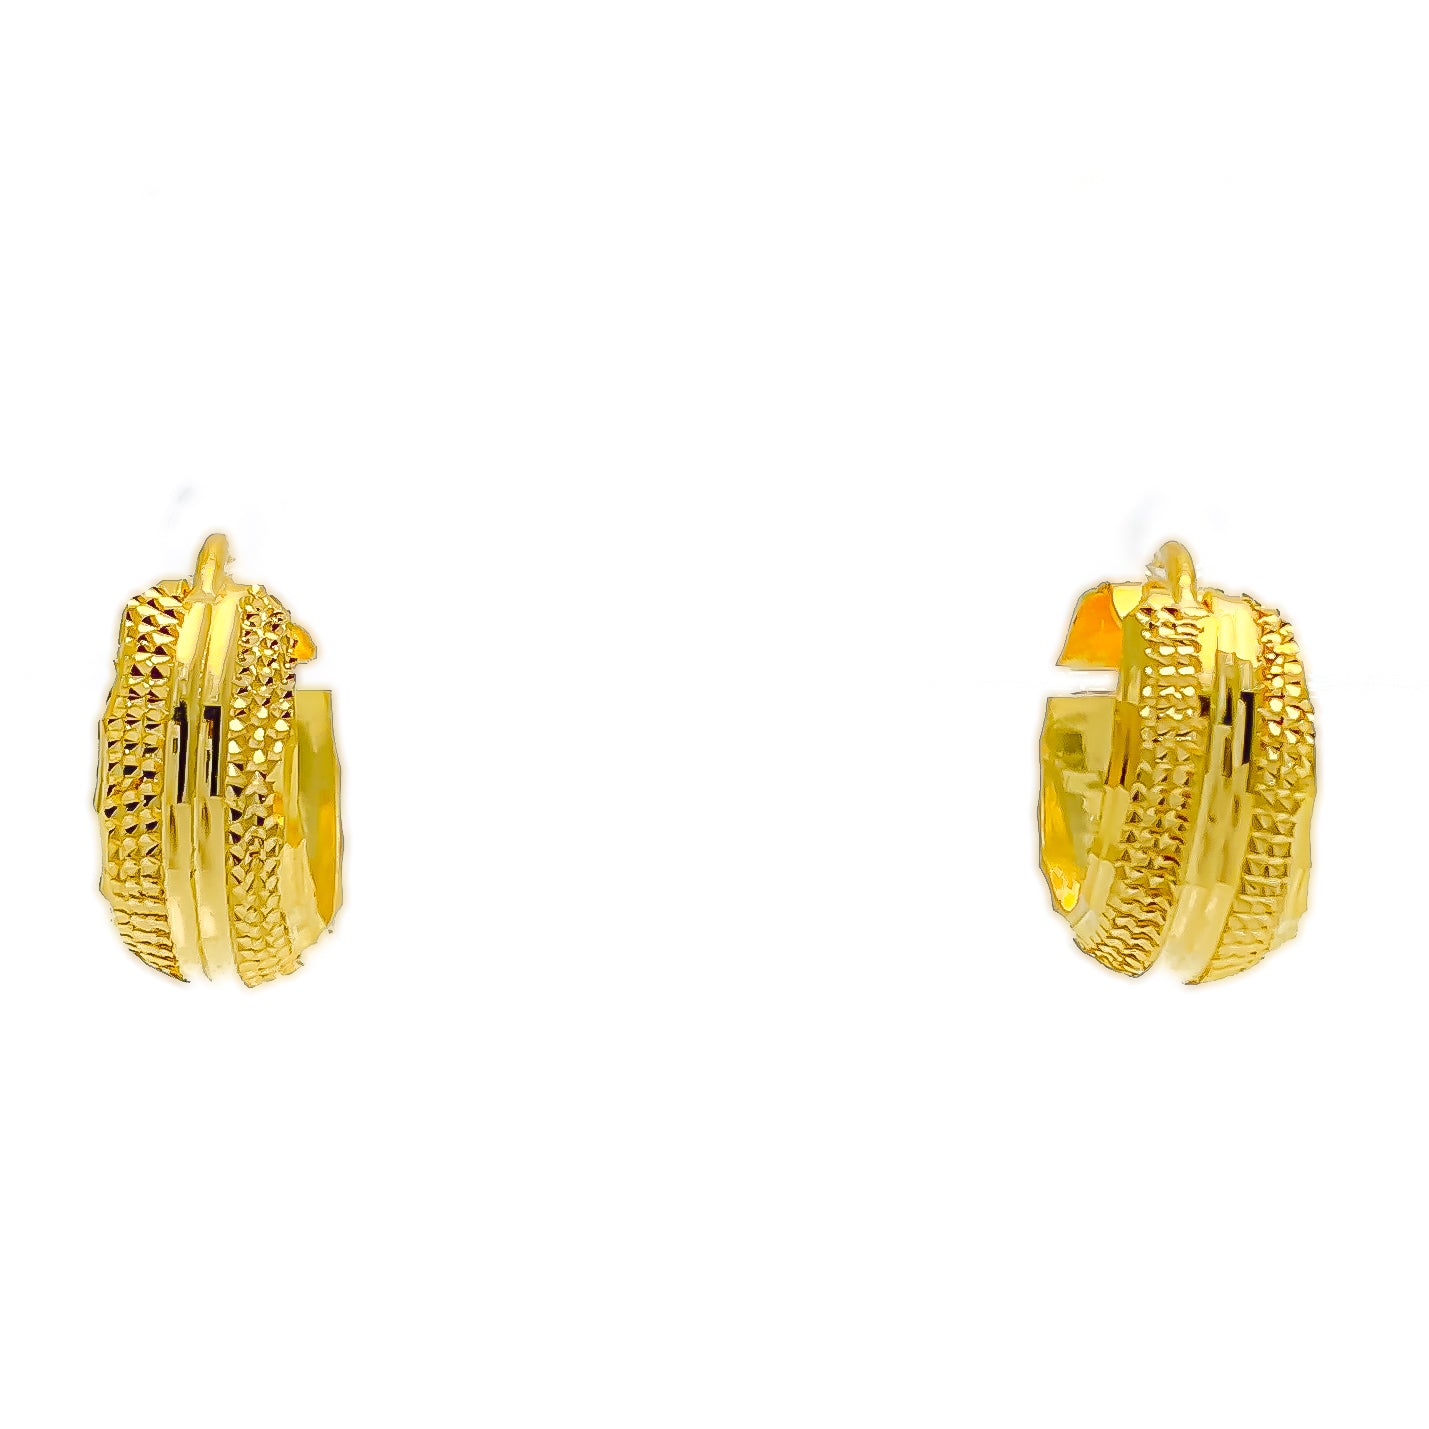 Gold Bali Earrings at Rs 3490/gram | सोने की बालियां in Mumbai | ID:  19244542933